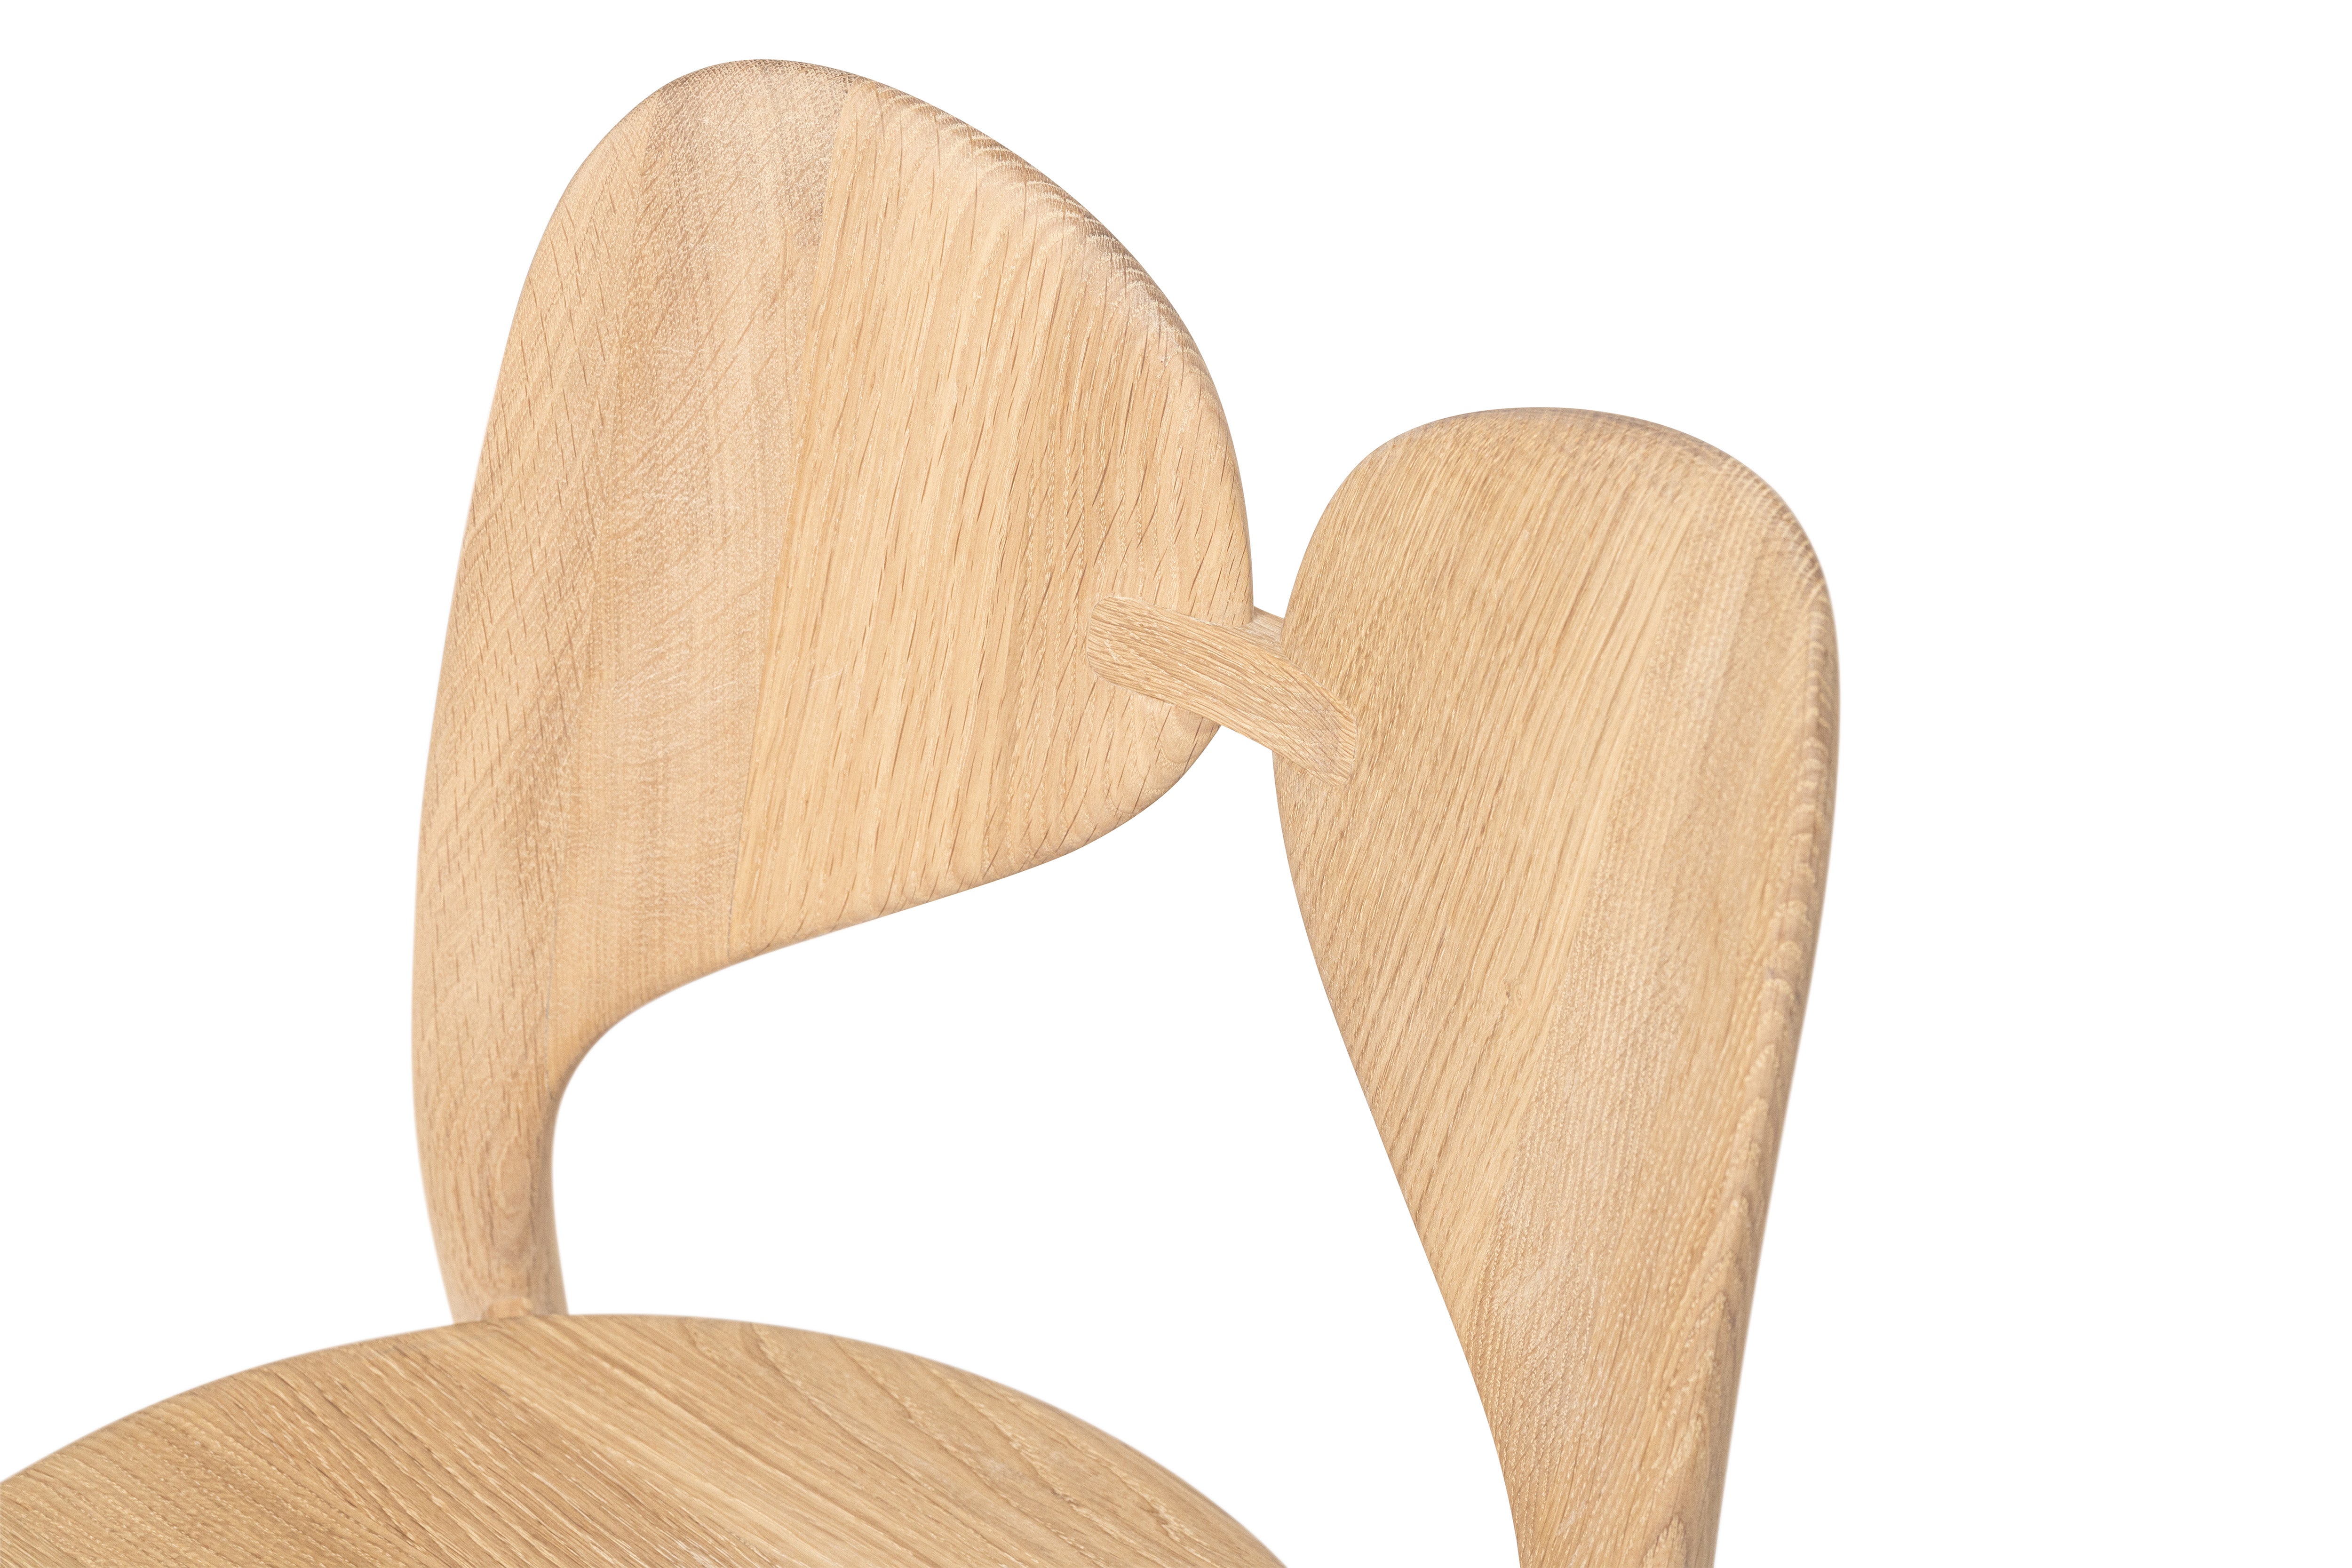 LEPIDA Stuhl - SOLIDMADE | Design Furniture